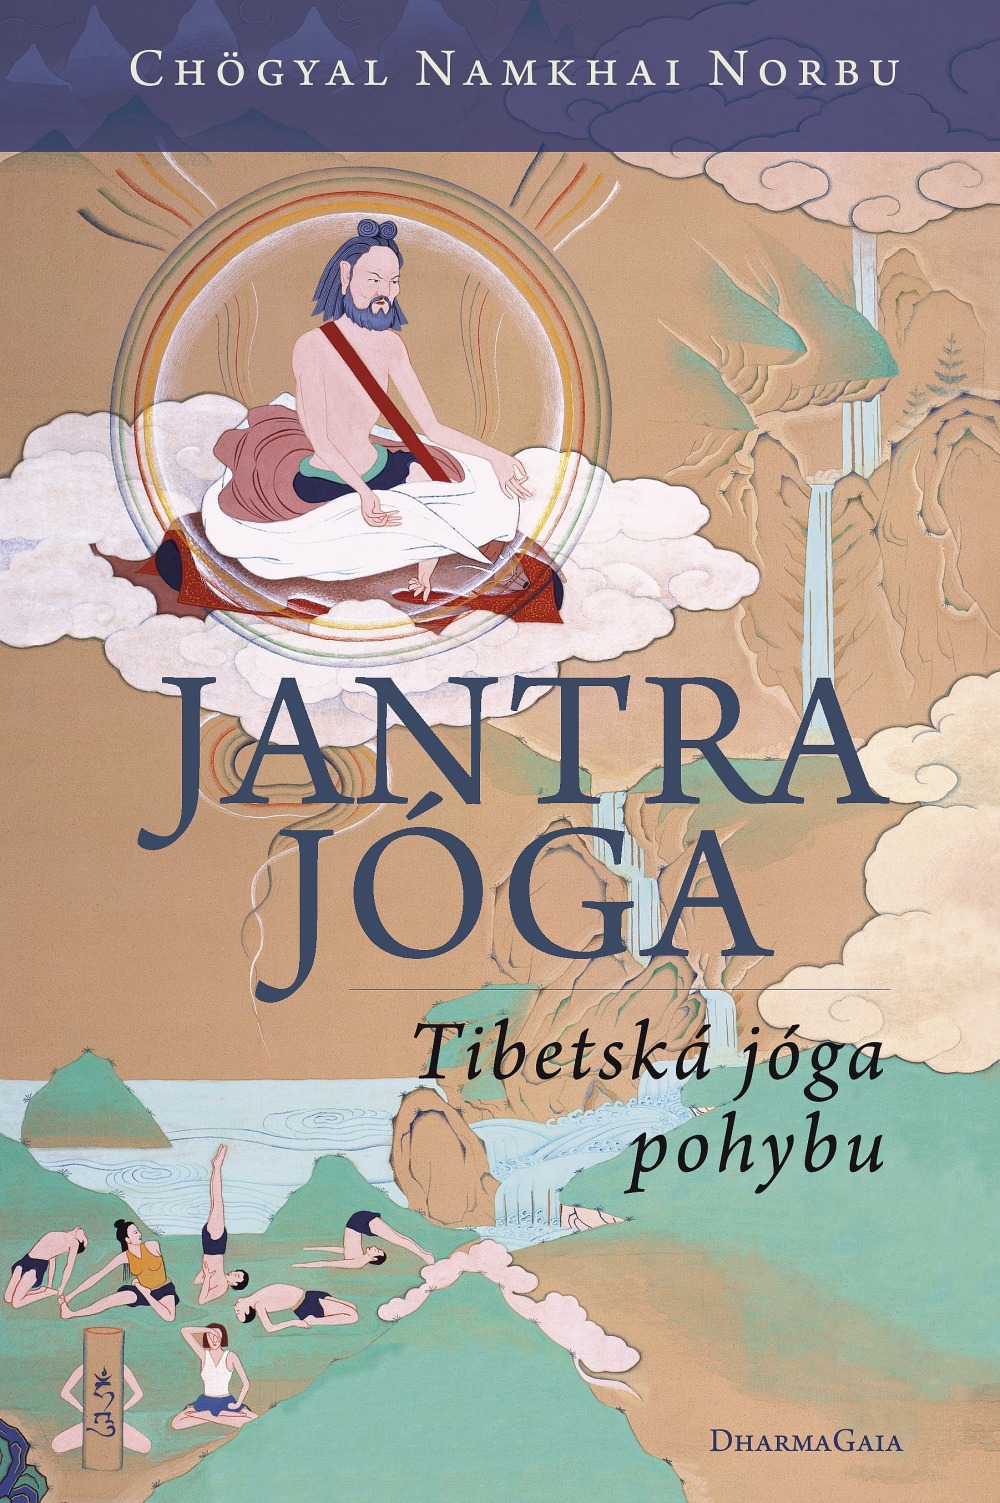 Jantrajóga Tibetská jóga pohybu